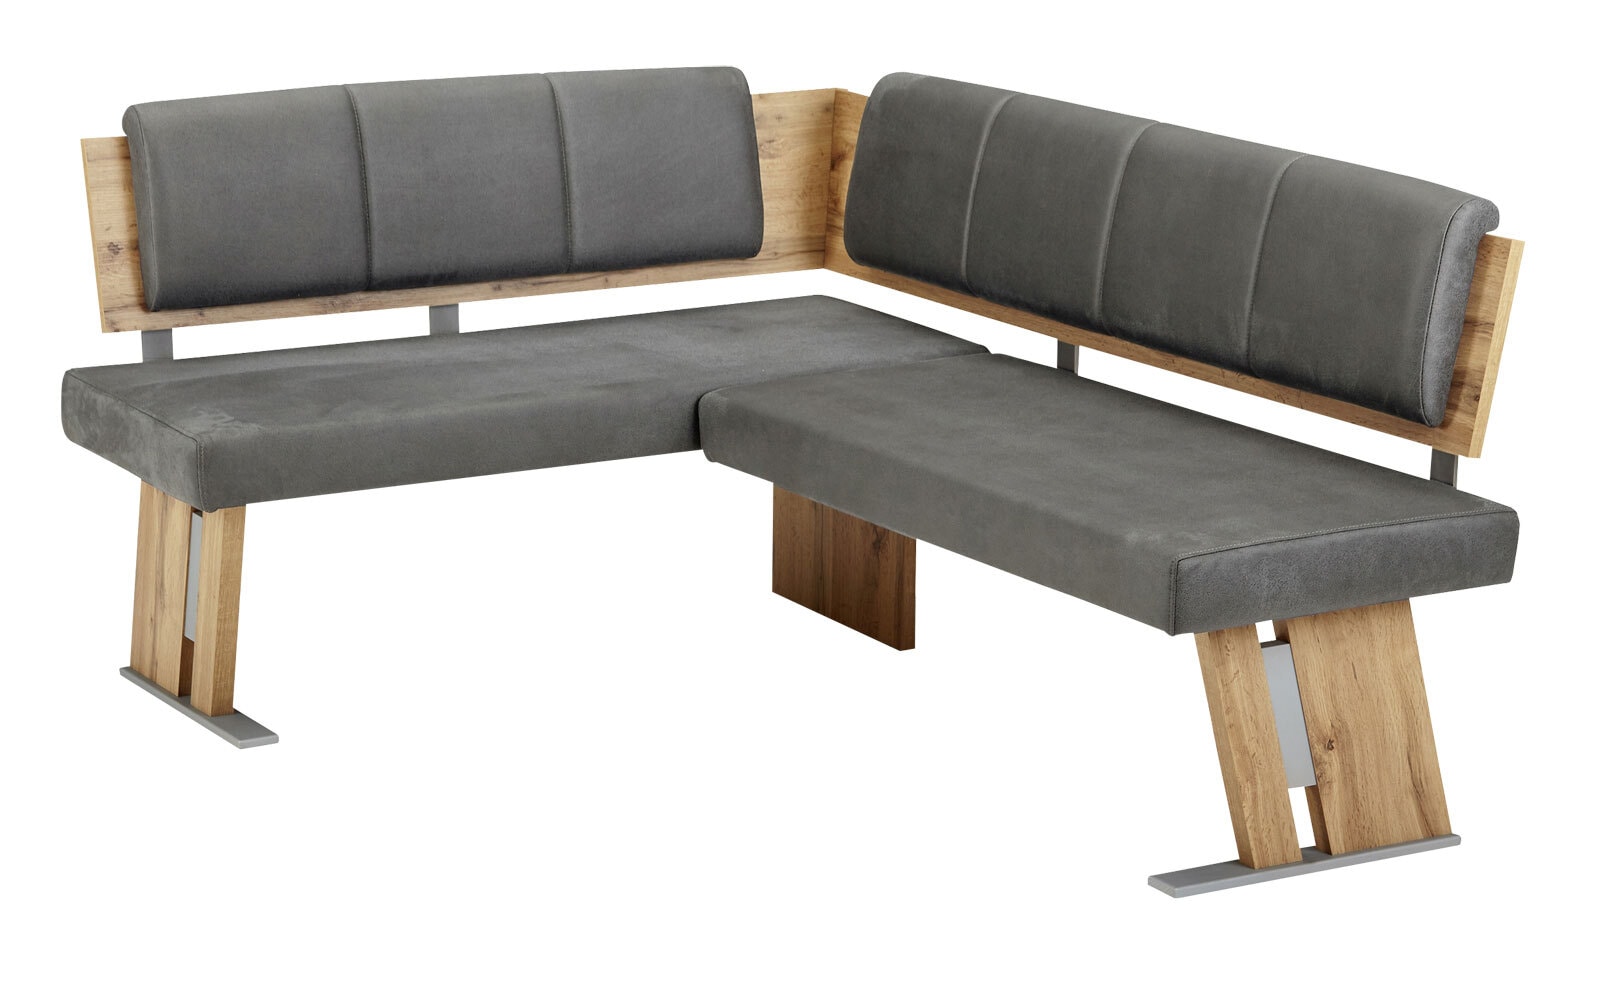 vito Eckbank ELIMO mit Tisch 110-150 x 70 cm und 2 Stühle